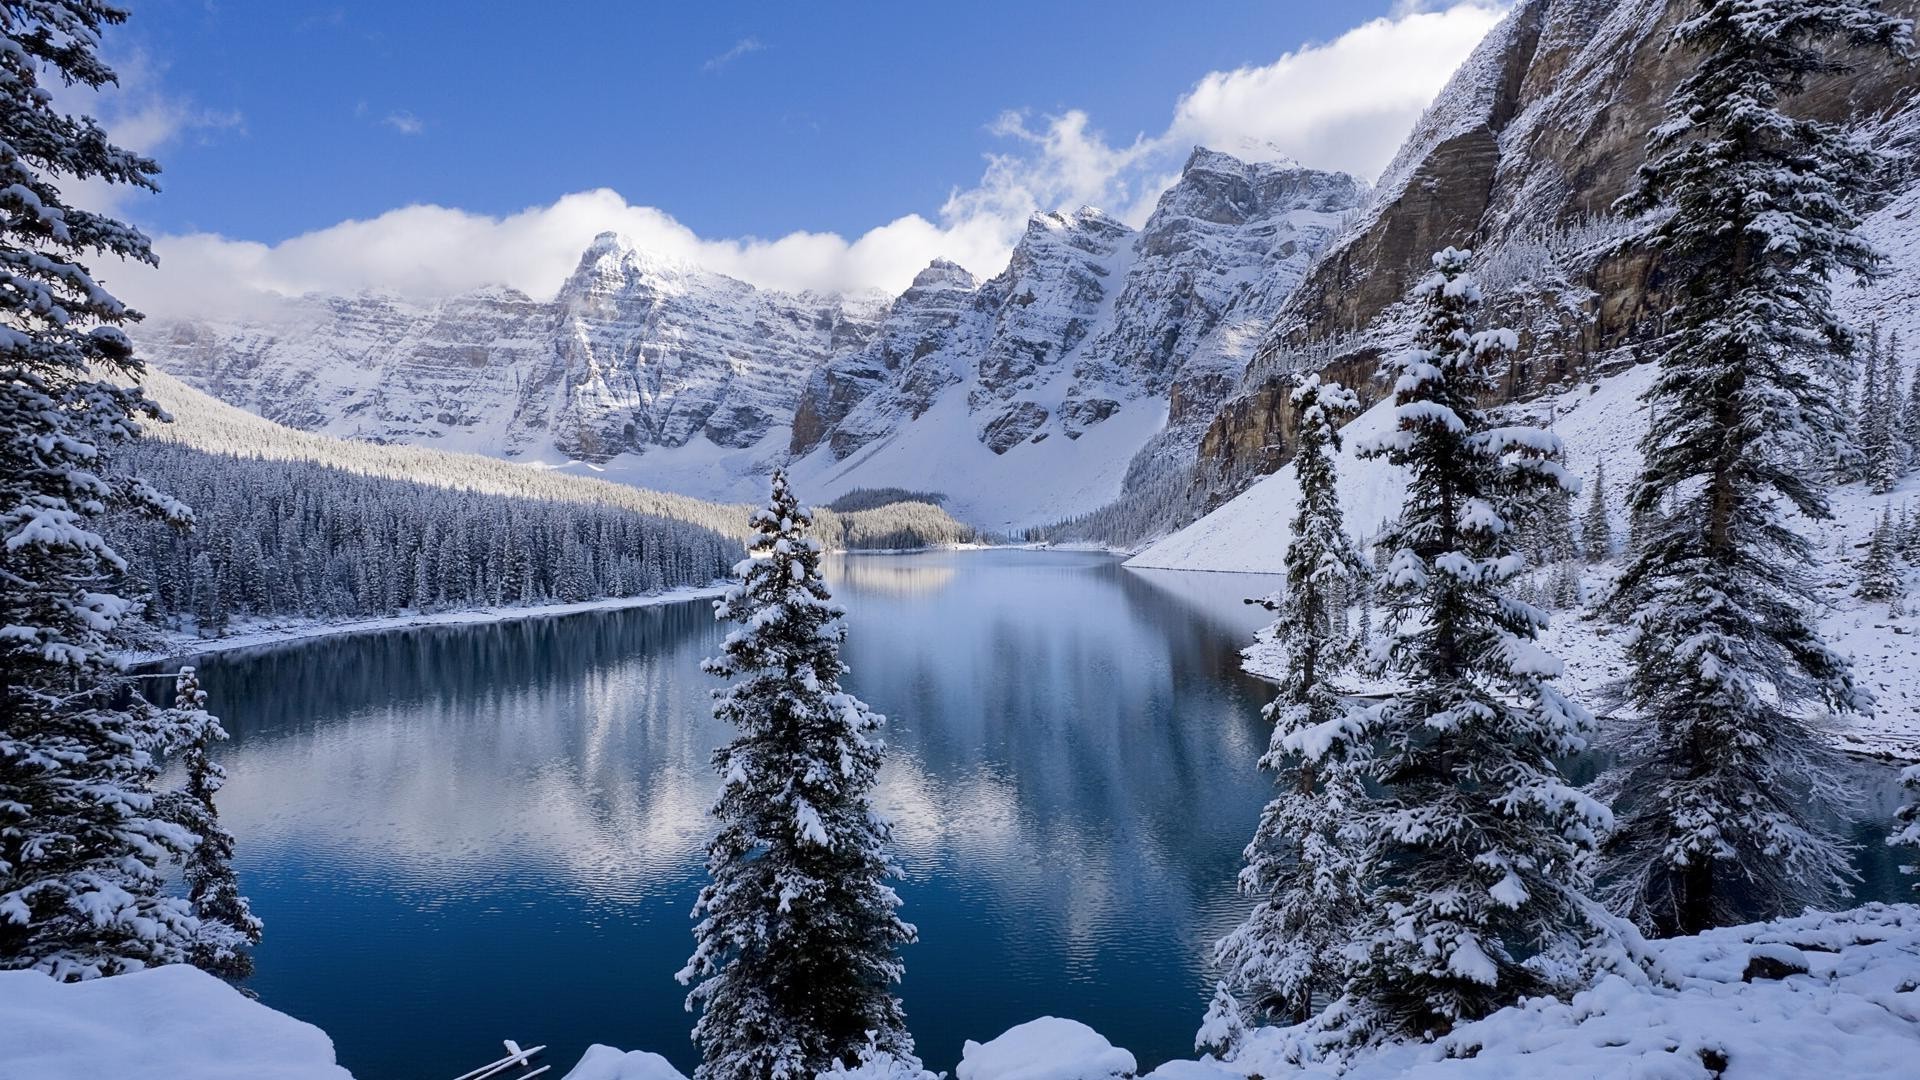 зима снег горы холодная живописный древесины лед пейзаж эвергрин природа на открытом воздухе хвойные путешествия горный пик долина